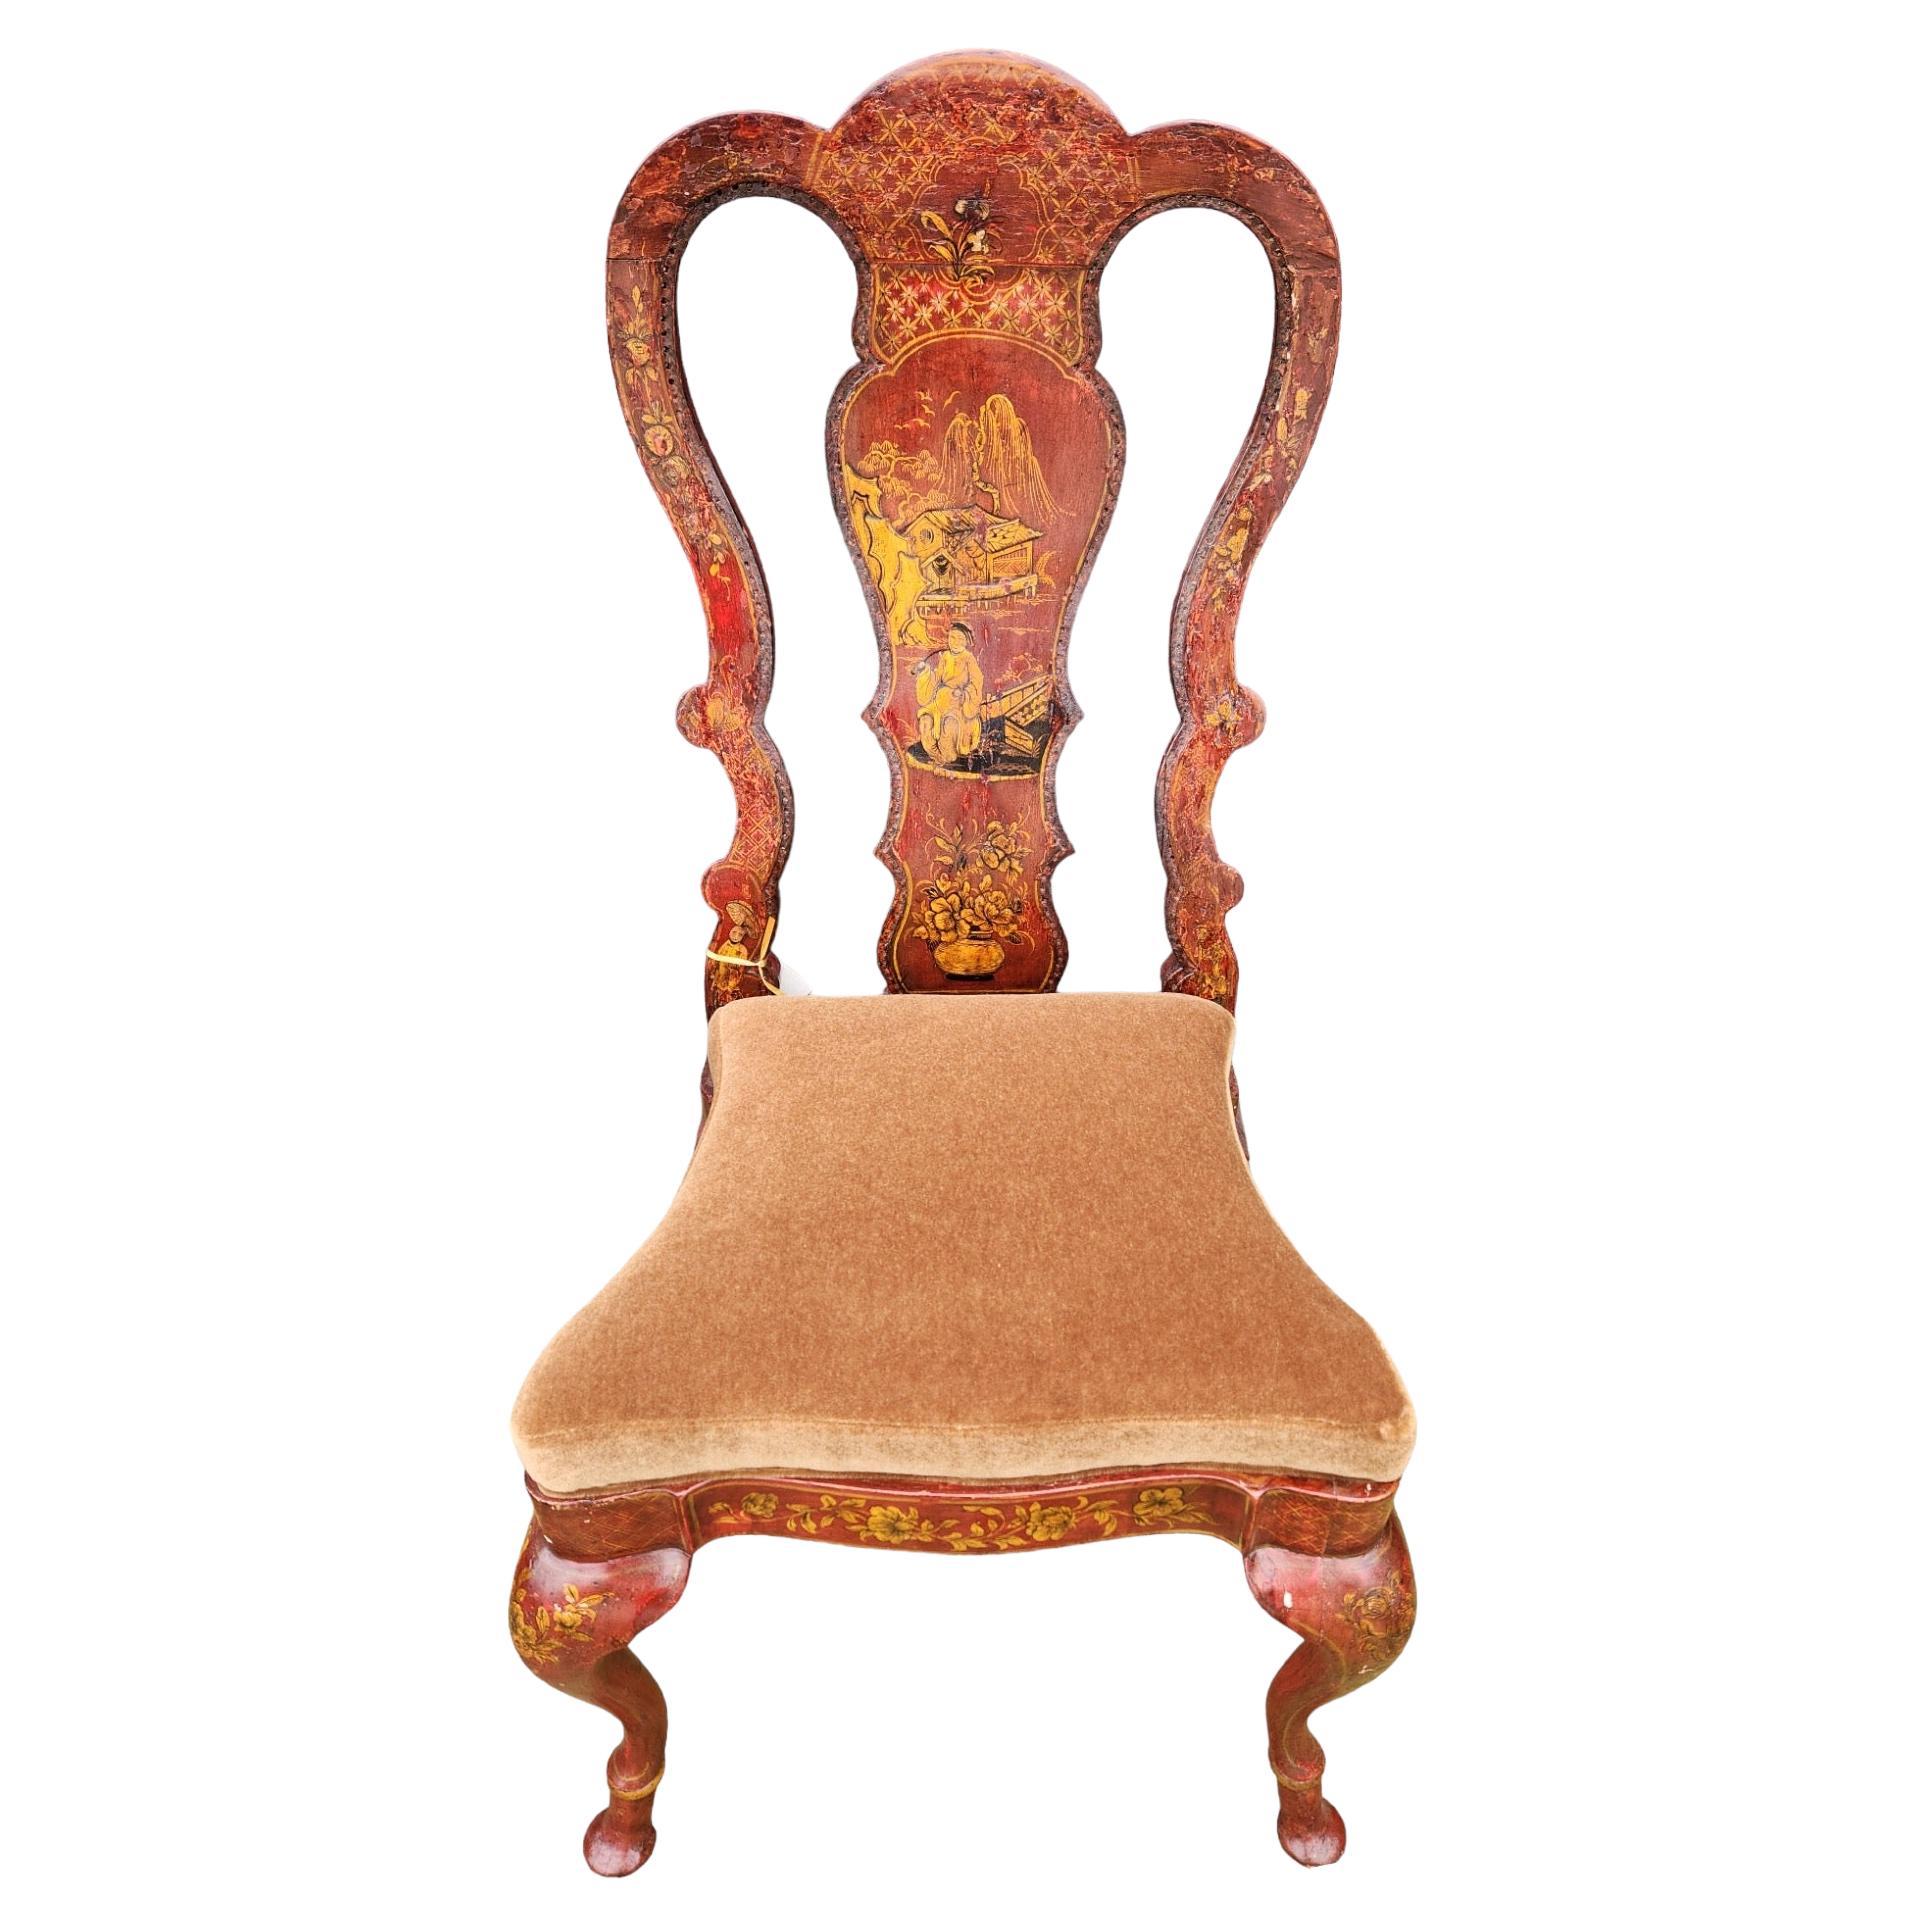 Chinoiserie-Stuhl im Queen Anne-Stil des 19. Jahrhunderts